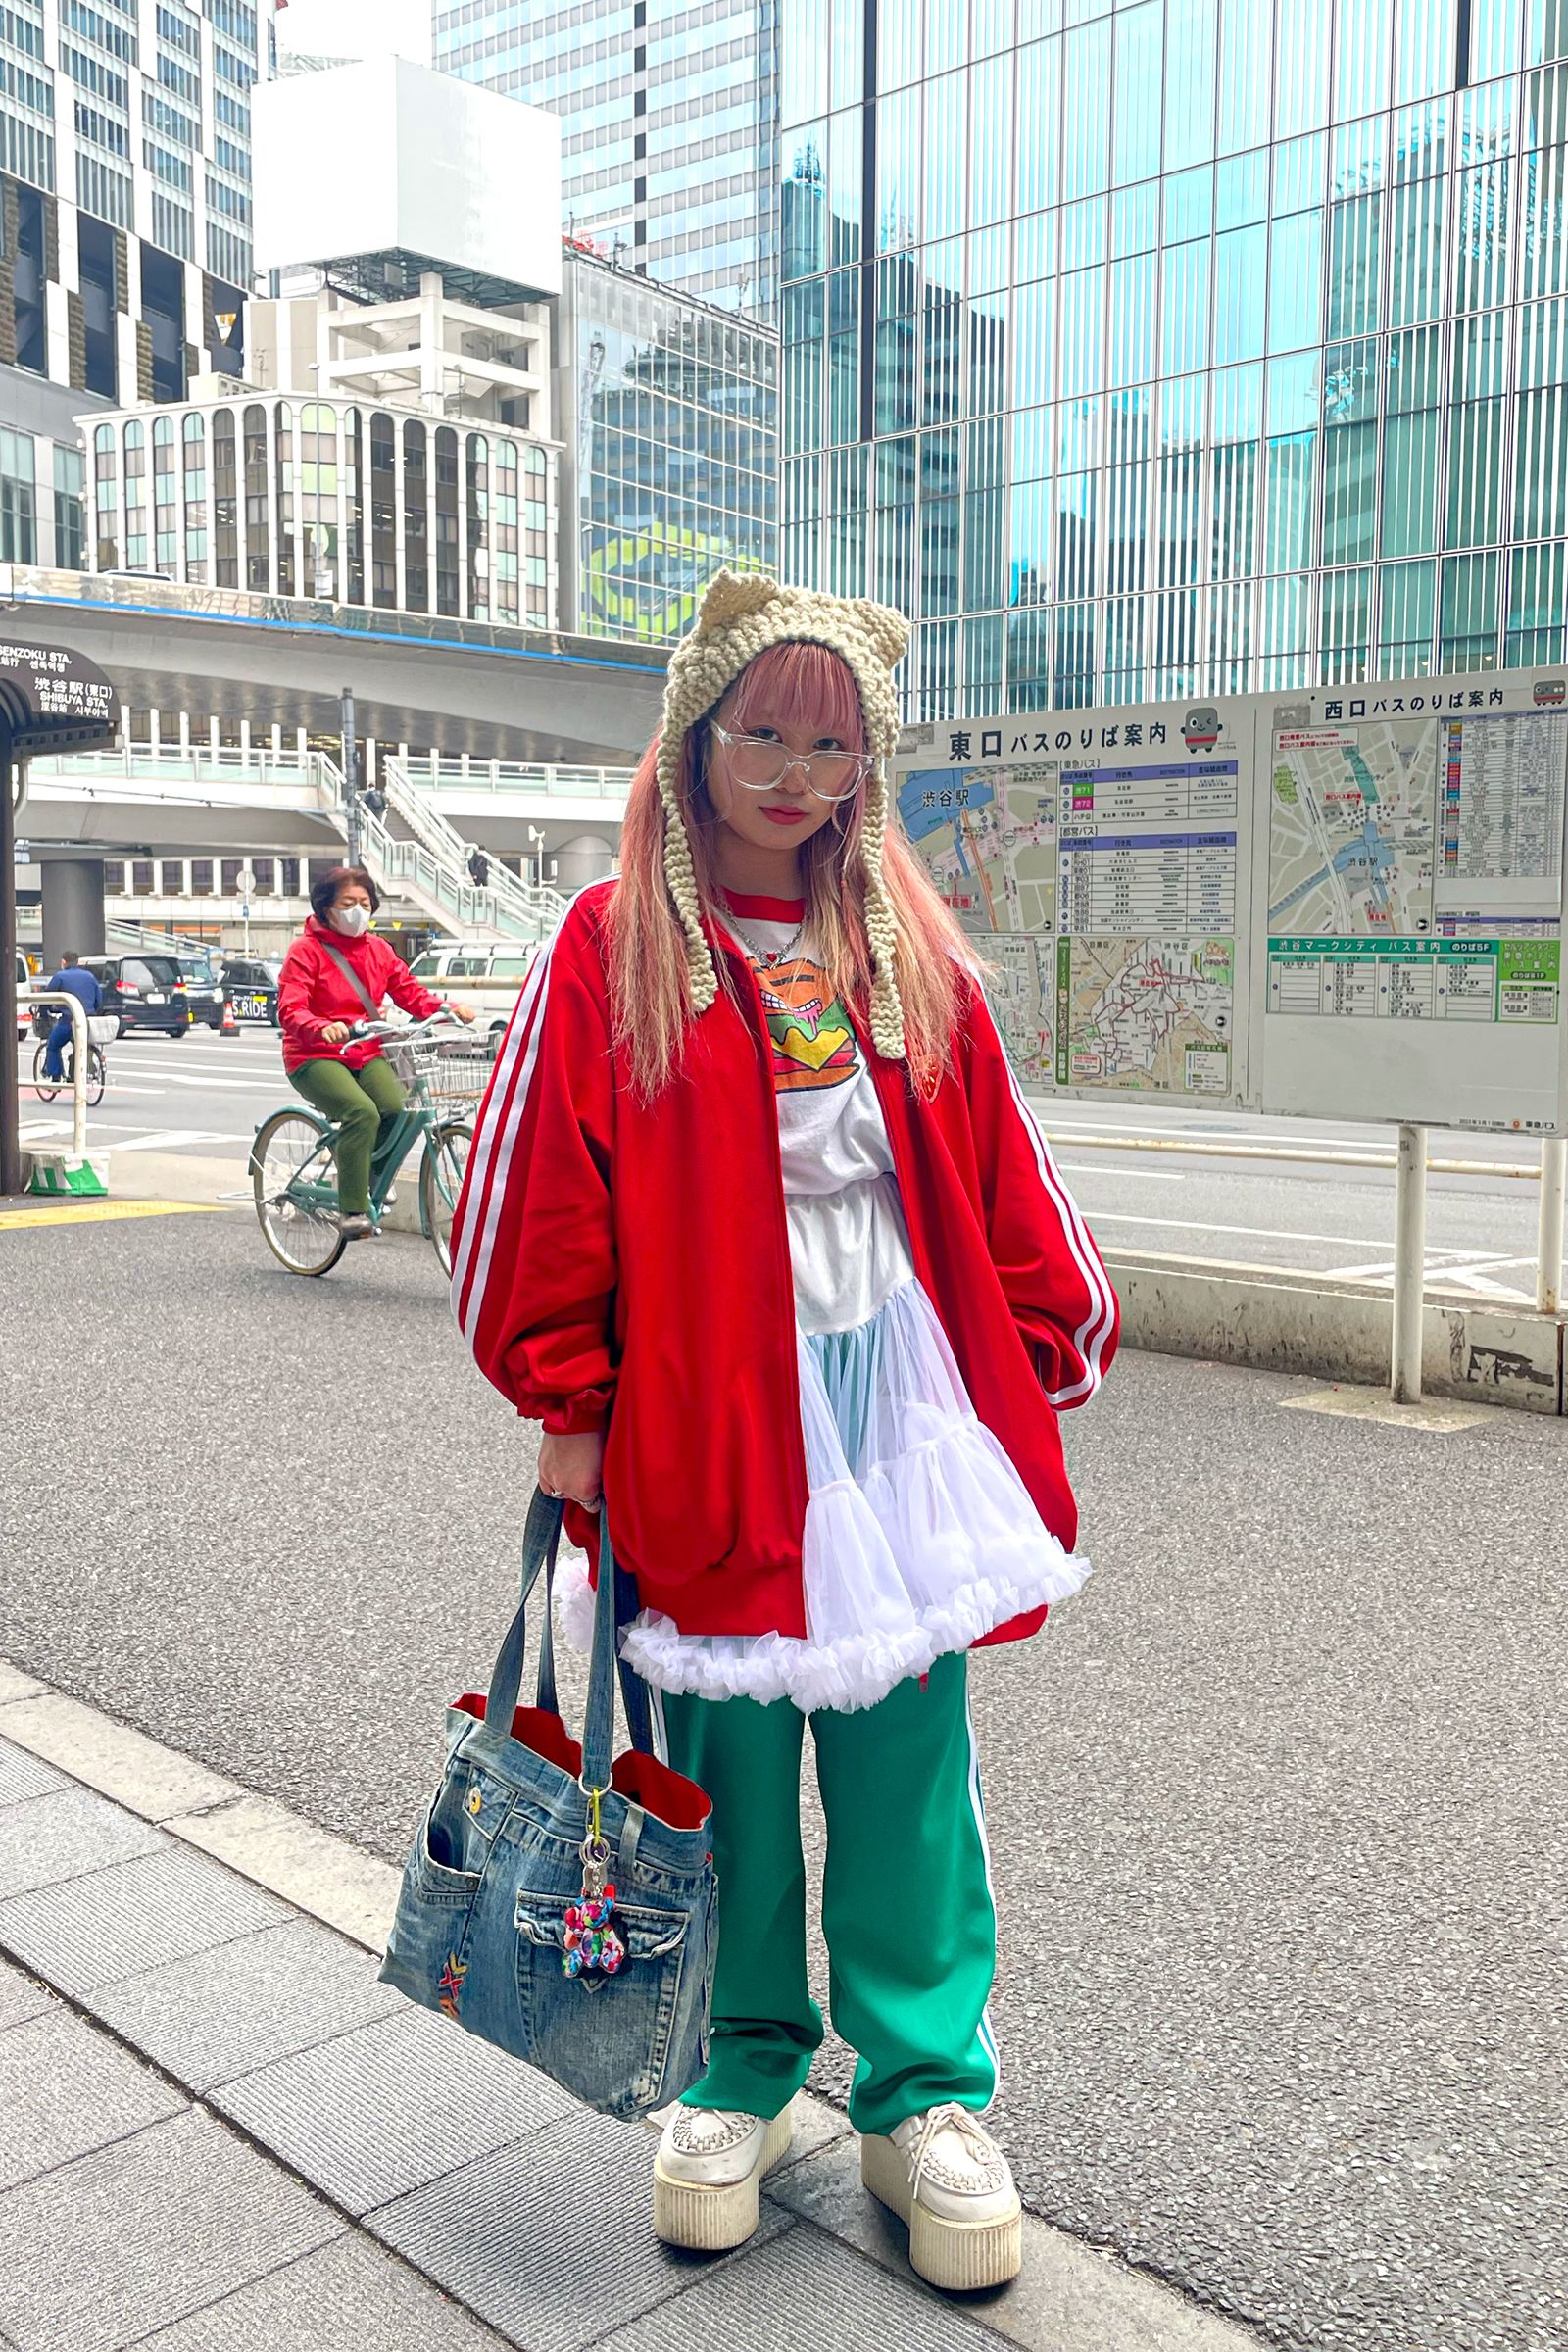 No Longer Just Summer Wear, Fashion, Trends in Japan